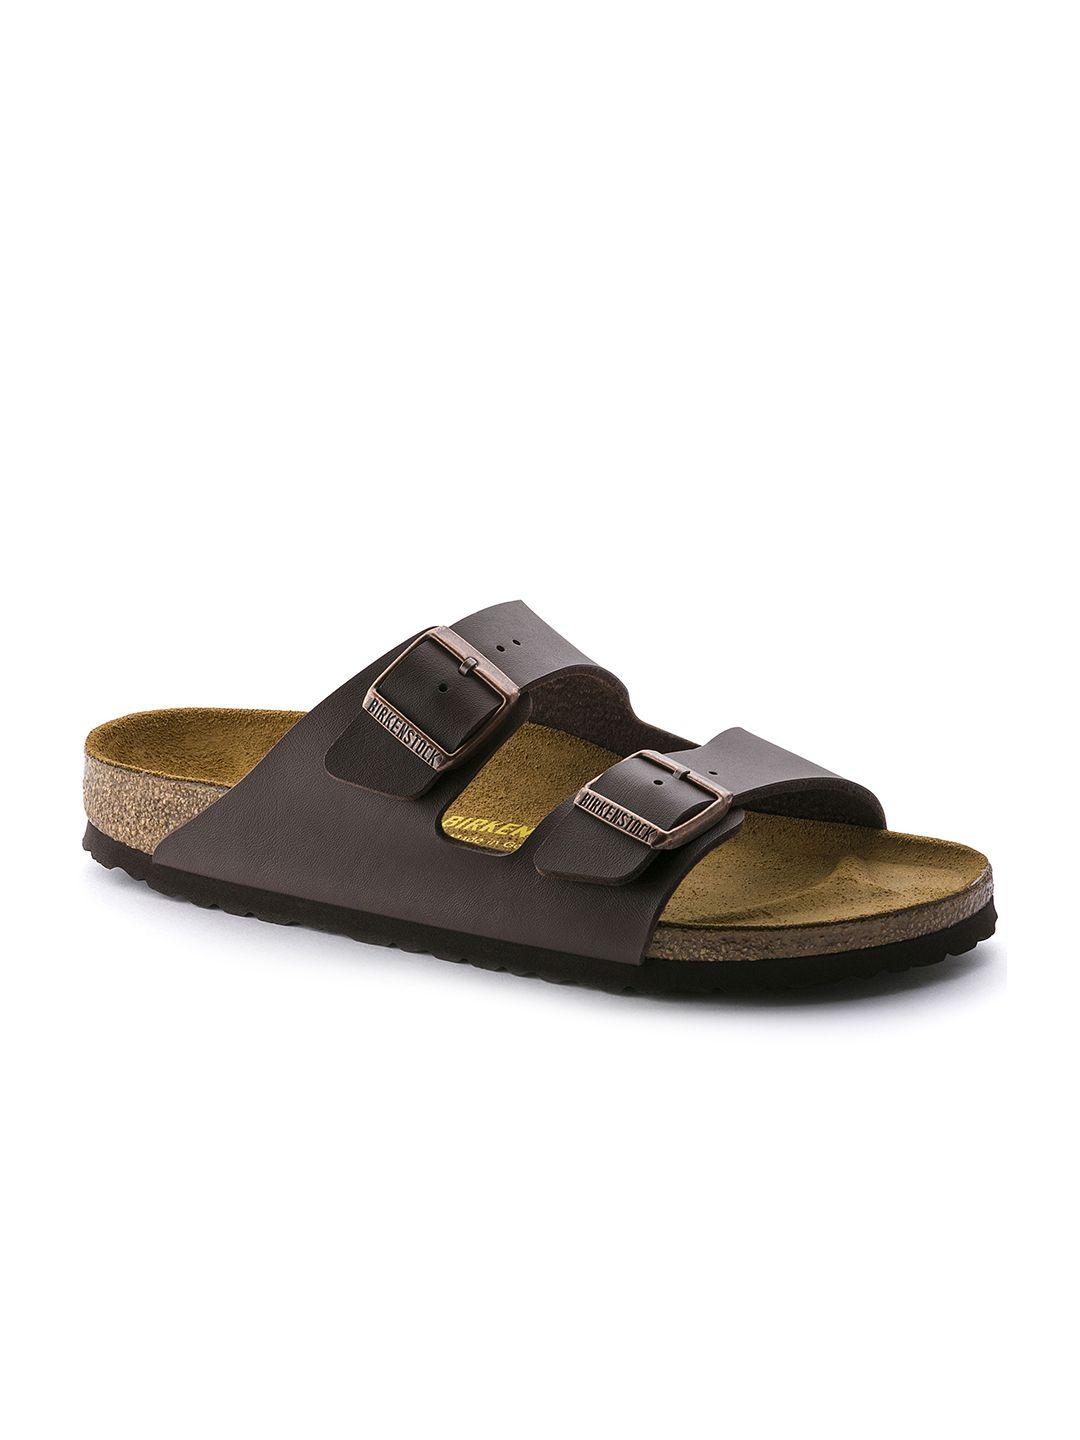 birkenstock unisex coffee brown arizona birko-flor regular width comfort sandals